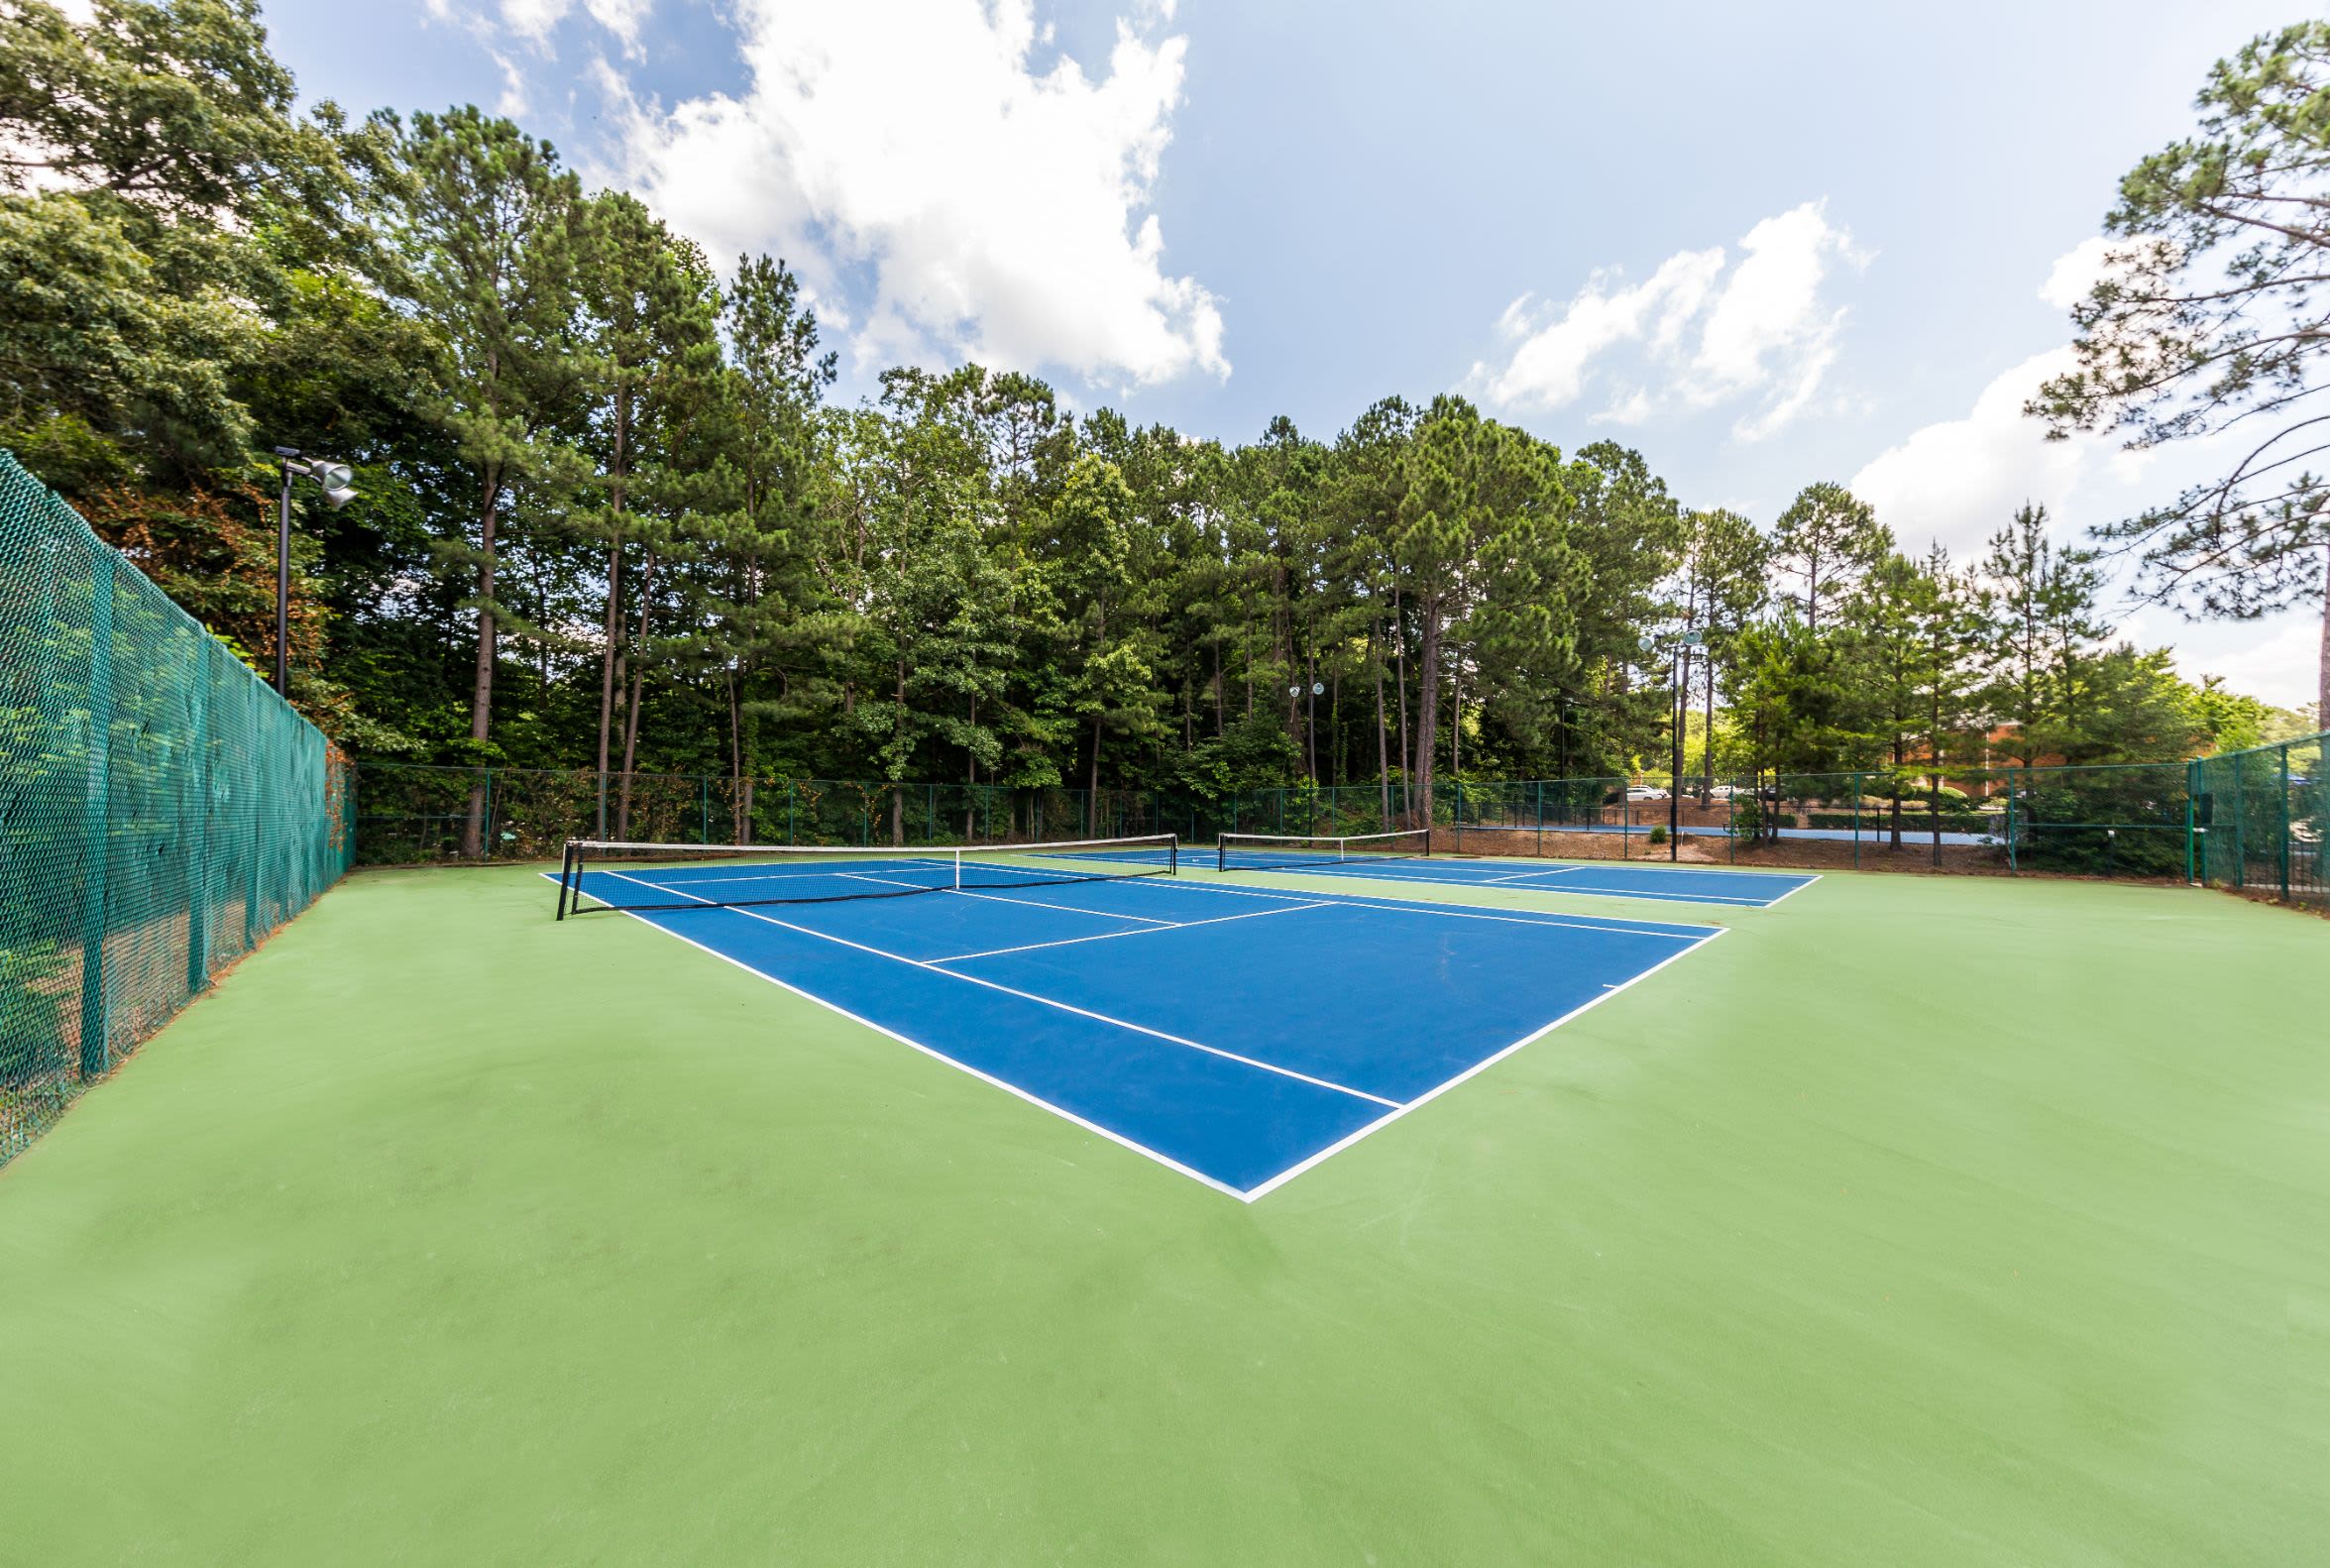 Tennis court at Marquis at Perimeter Center in Atlanta, Georgia